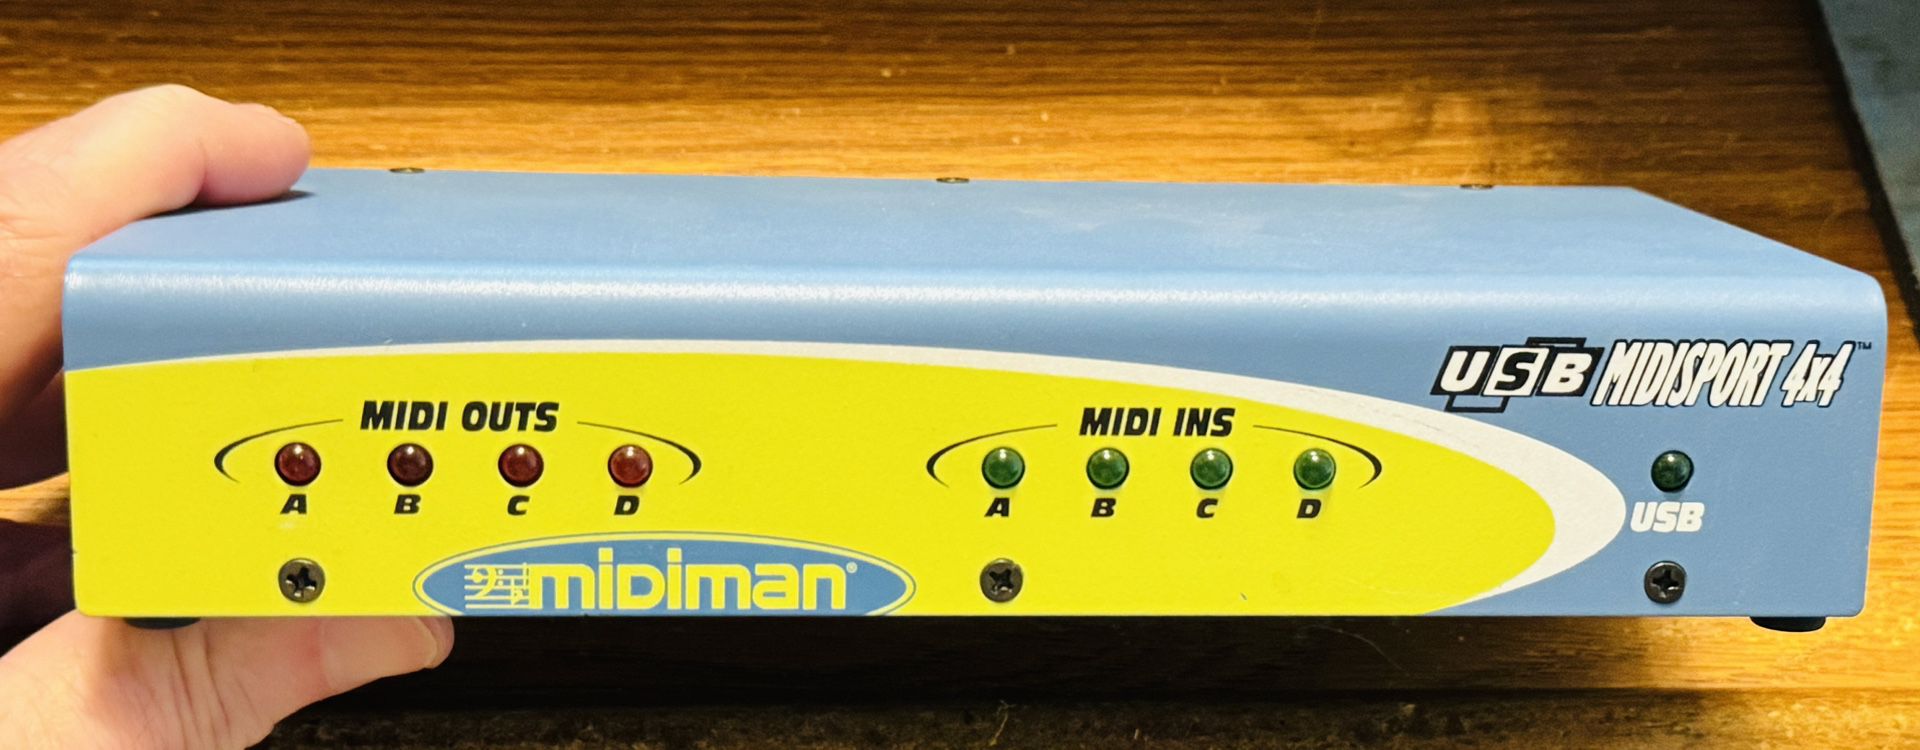 Midiman USB Midisport 4x4 Interface